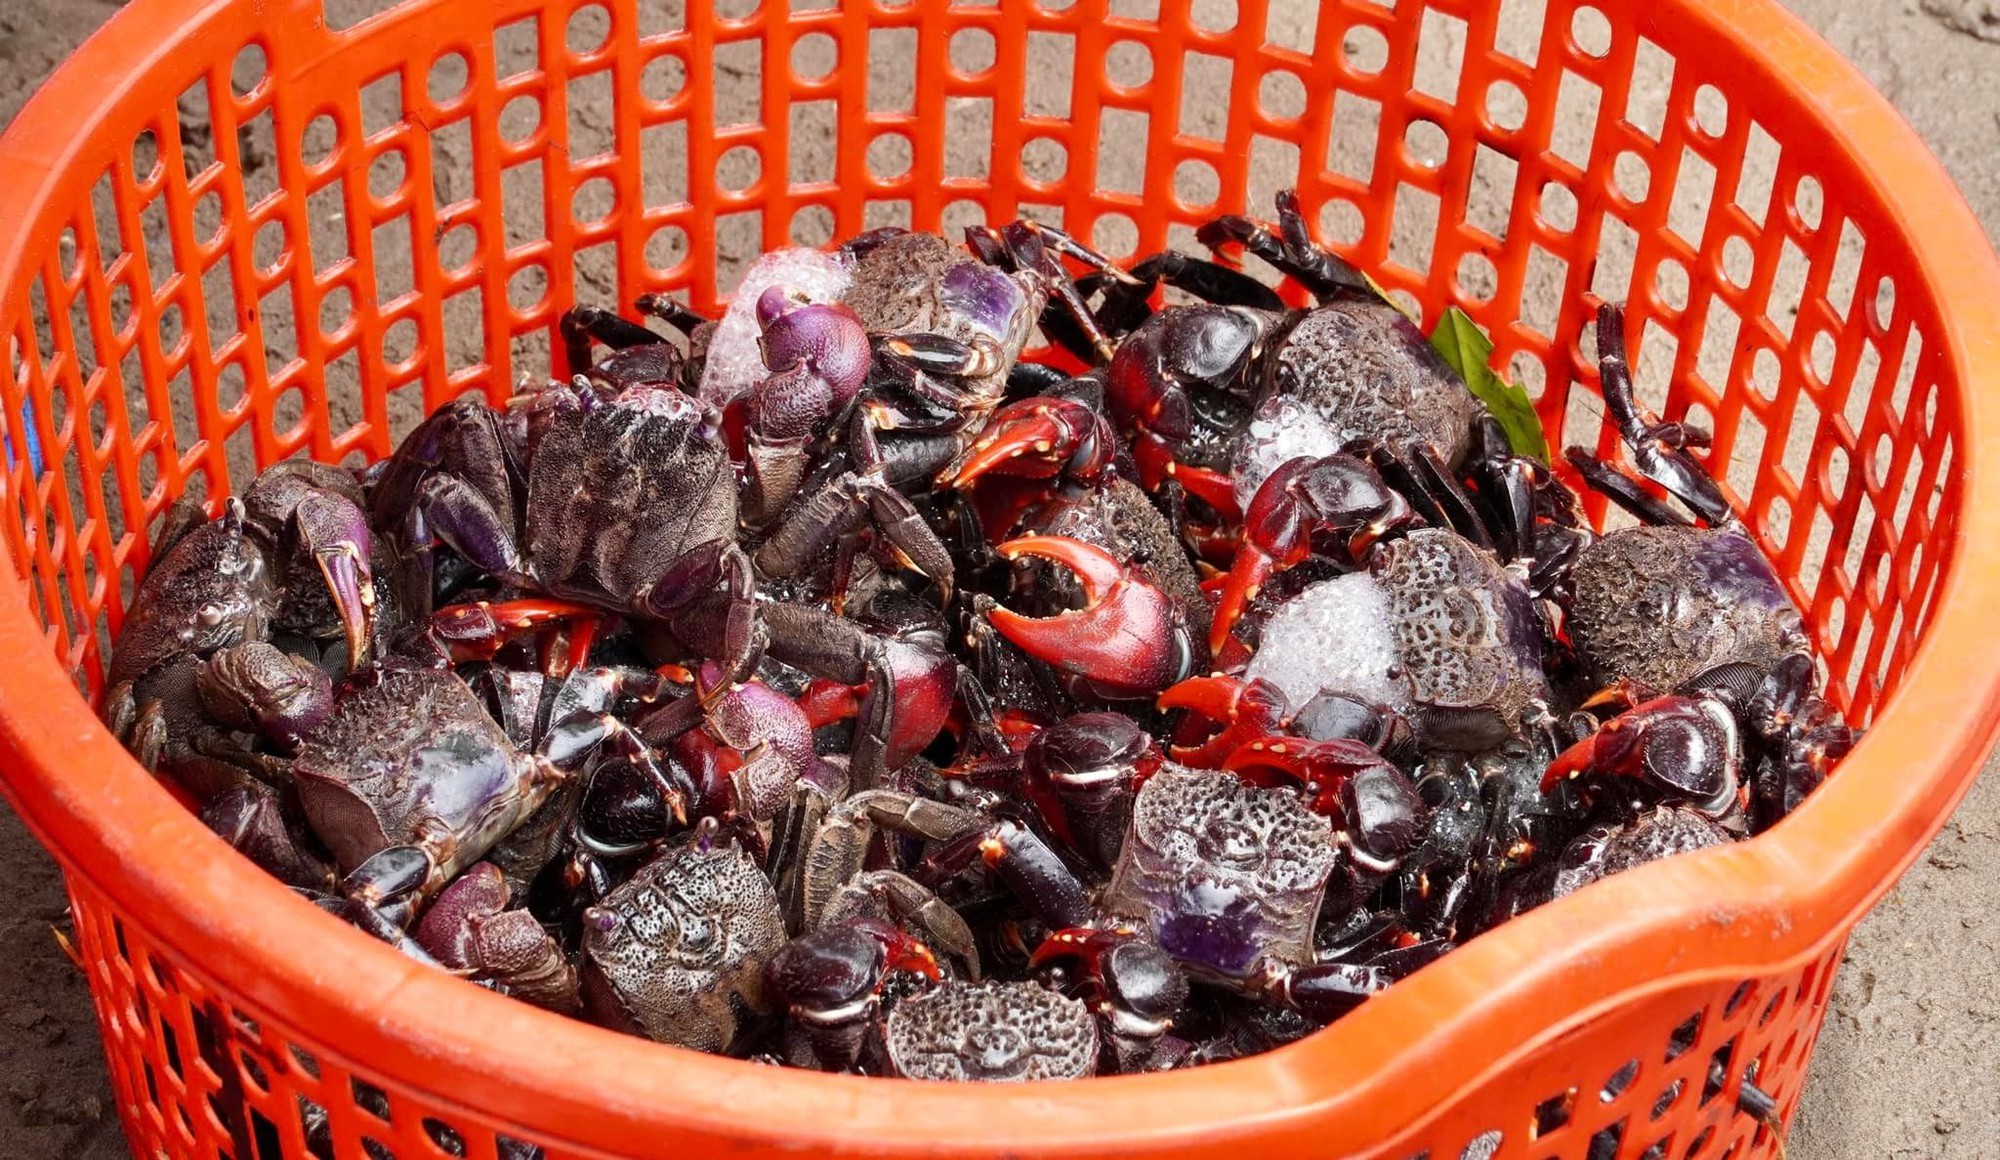 Chợ biển ở một huyện của Bến Tre họp ngay mép sóng, mua bán la liệt tôm, cua, cá, ốc ngon, lạ mắt- Ảnh 11.